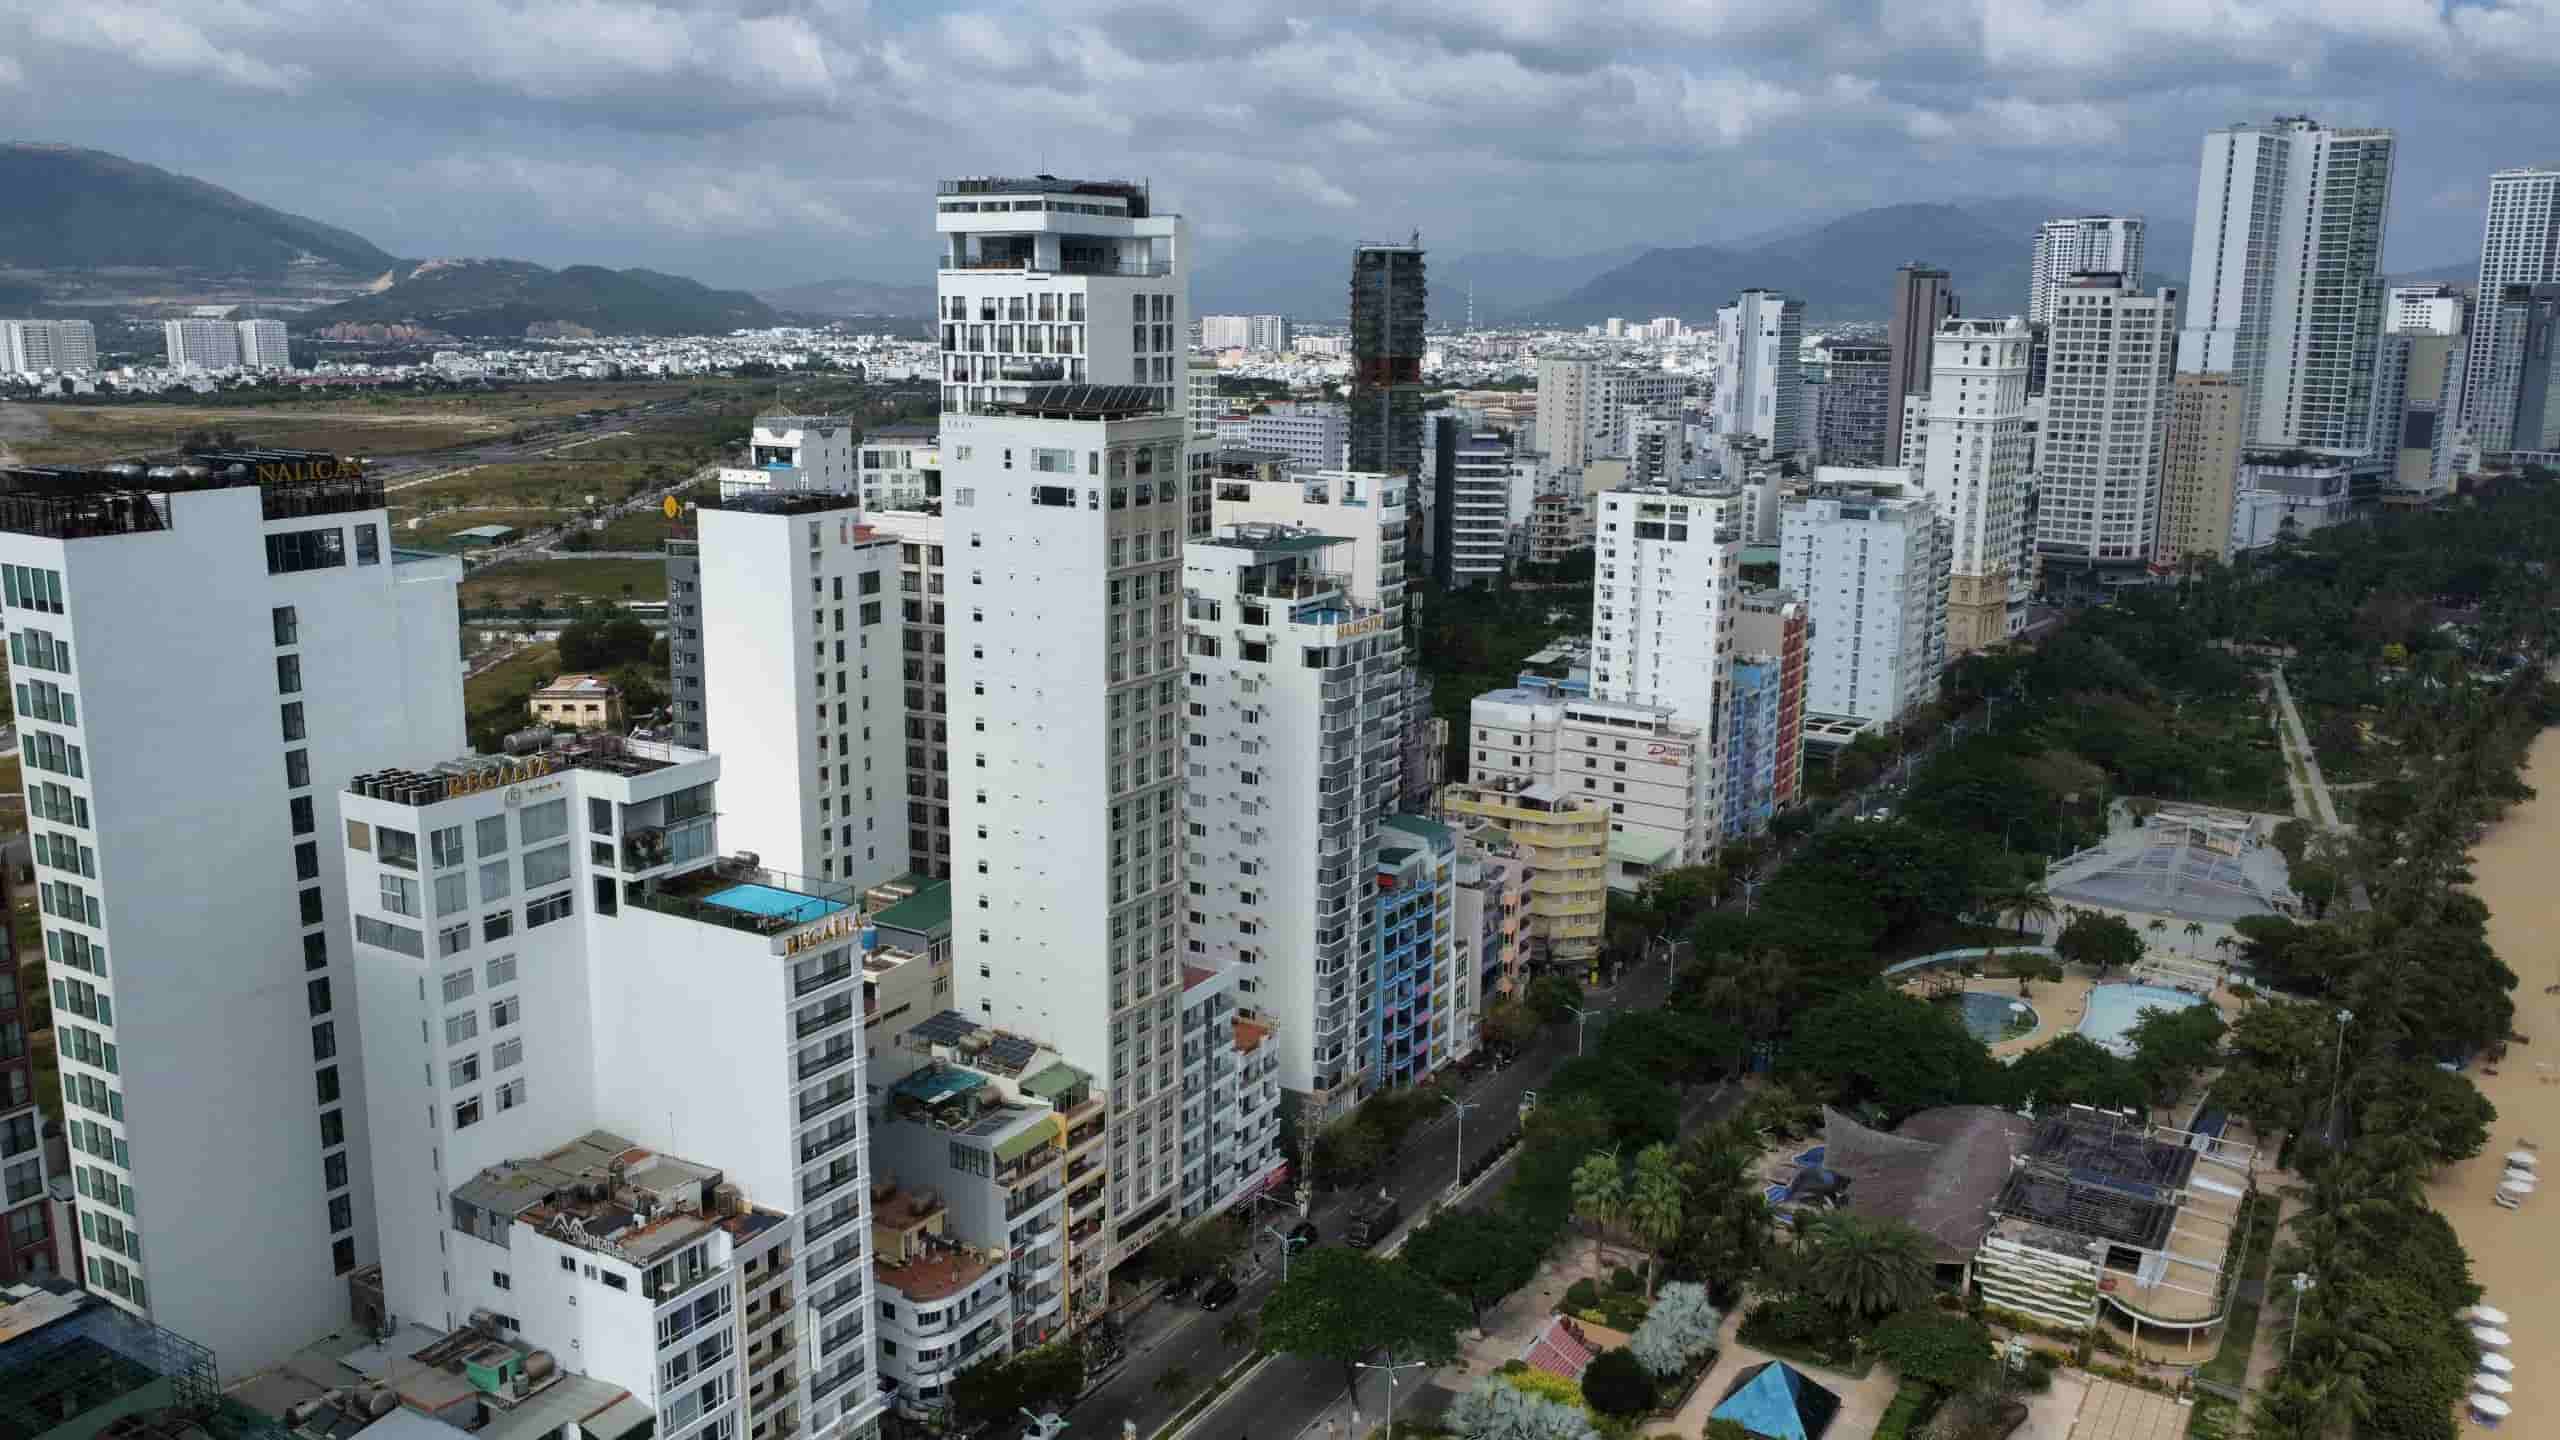  Qua rà soát, cơ quan chức năng phát hiện hàng loạt khách sạn tại TP Nha Trang tự ý nâng thêm tầng. Ảnh: Hữu Long